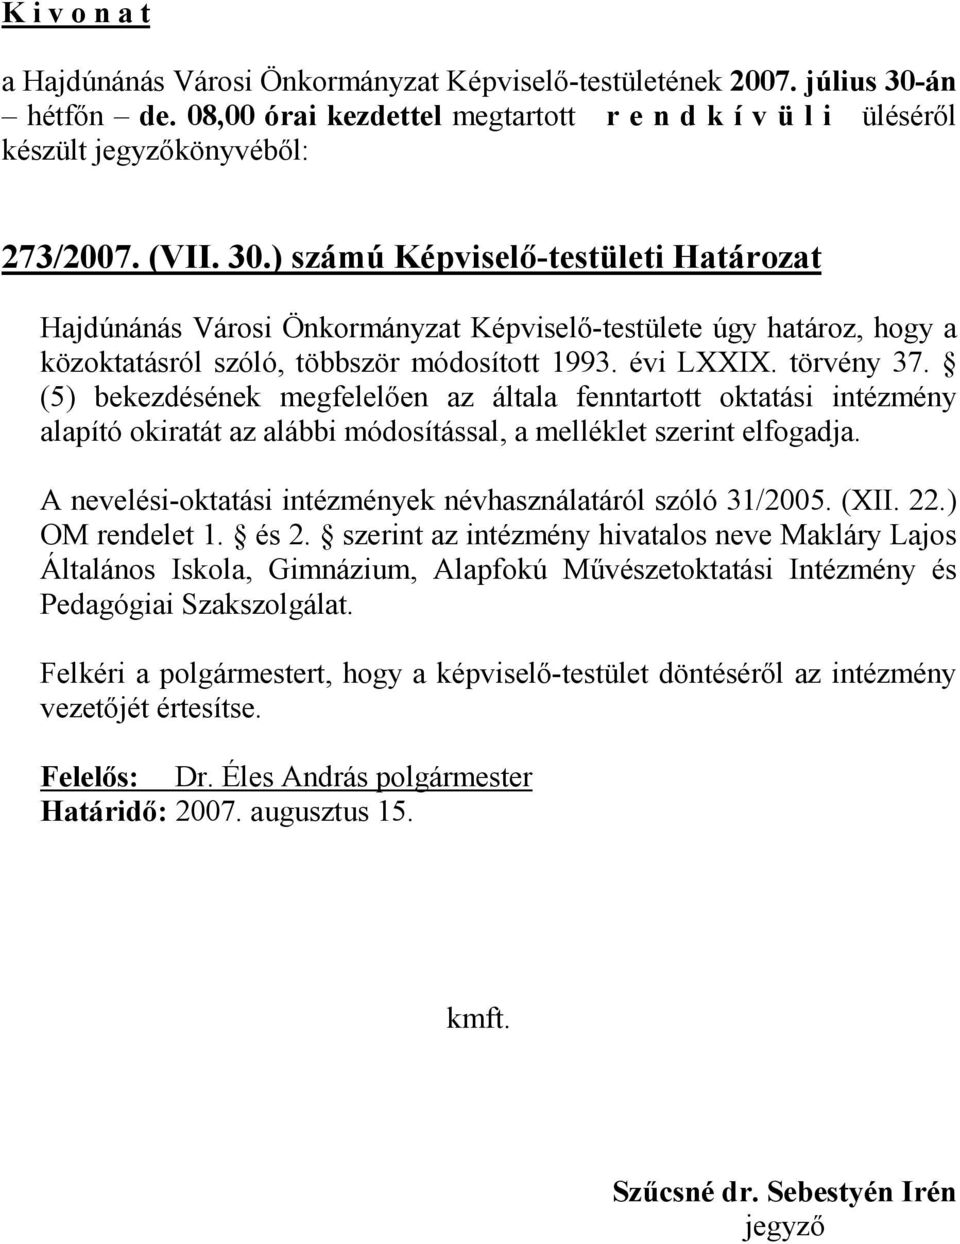 ) számú Képviselı-testületi Határozat Hajdúnánás Városi Önkormányzat Képviselı-testülete úgy határoz, hogy a közoktatásról szóló, többször módosított 1993. évi LXXIX. törvény 37.